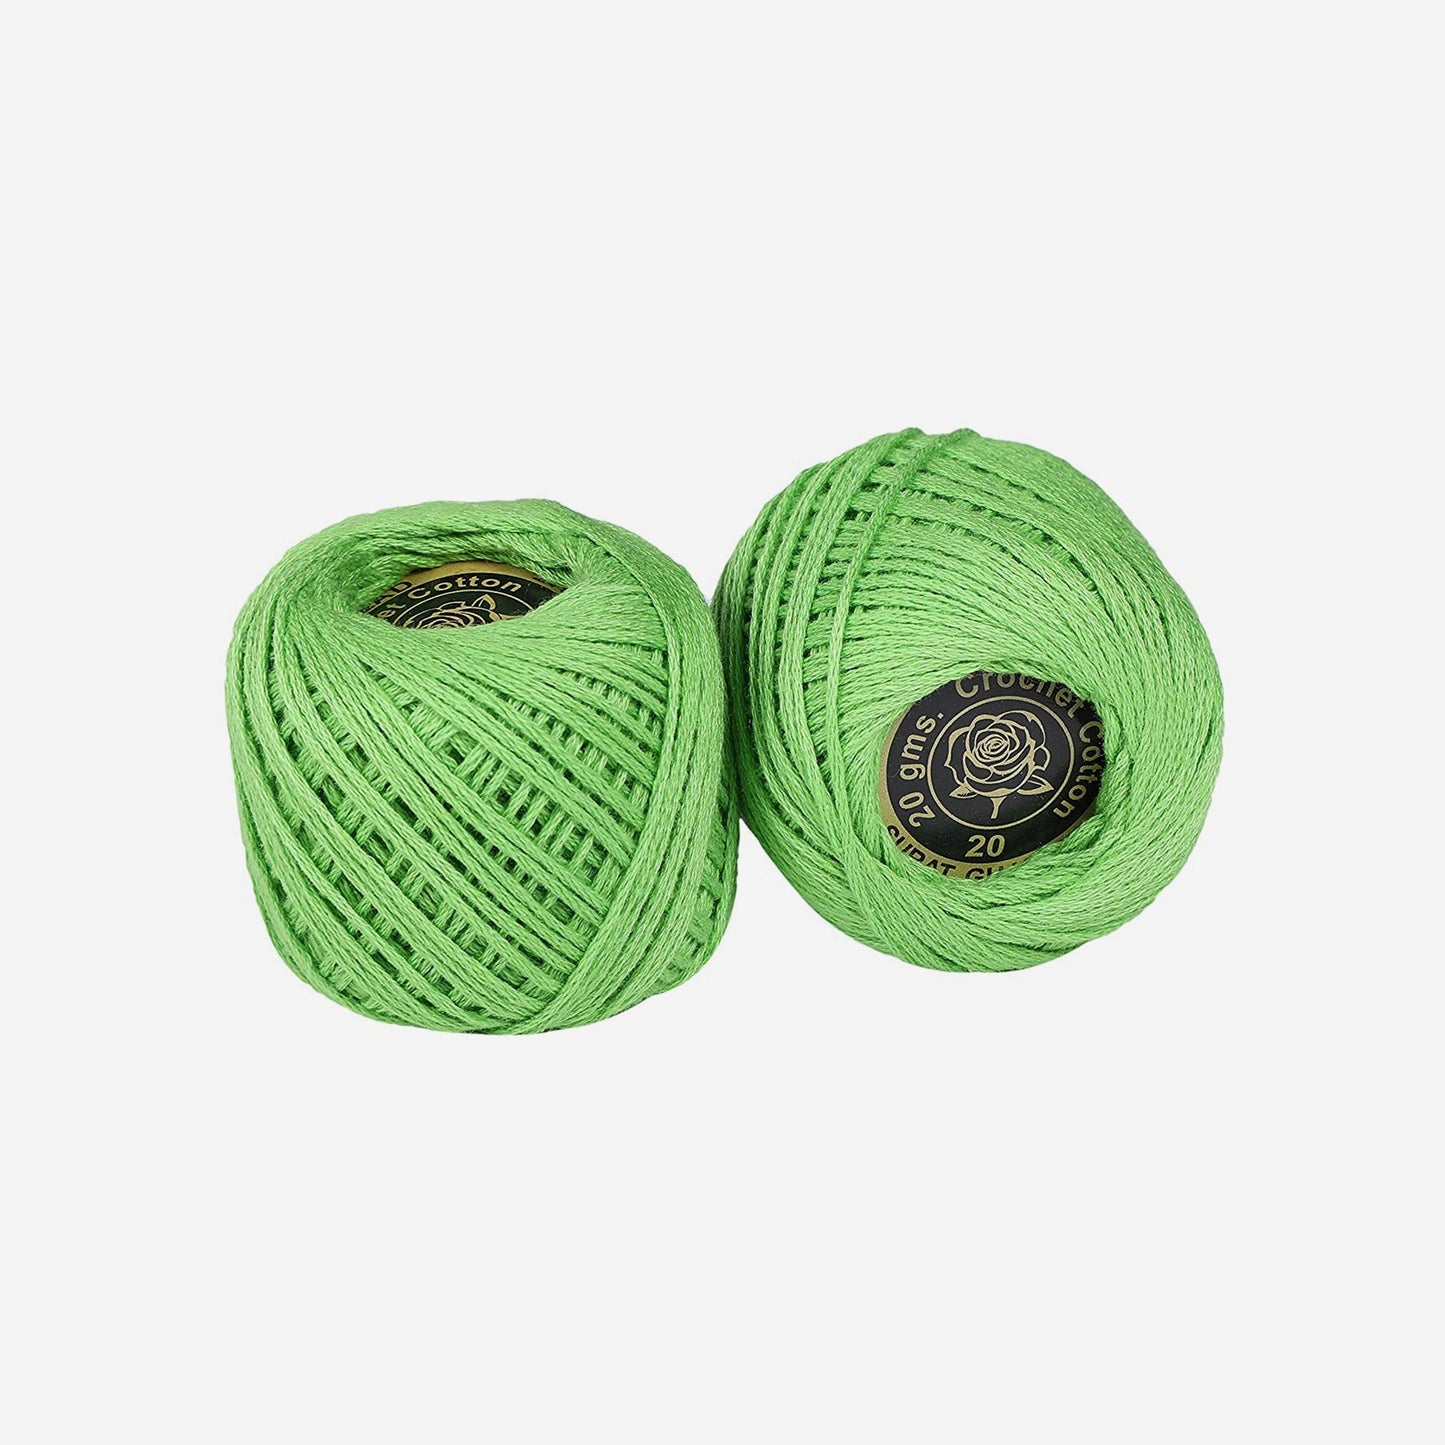 Hand-crochet hoops (Variation 9)